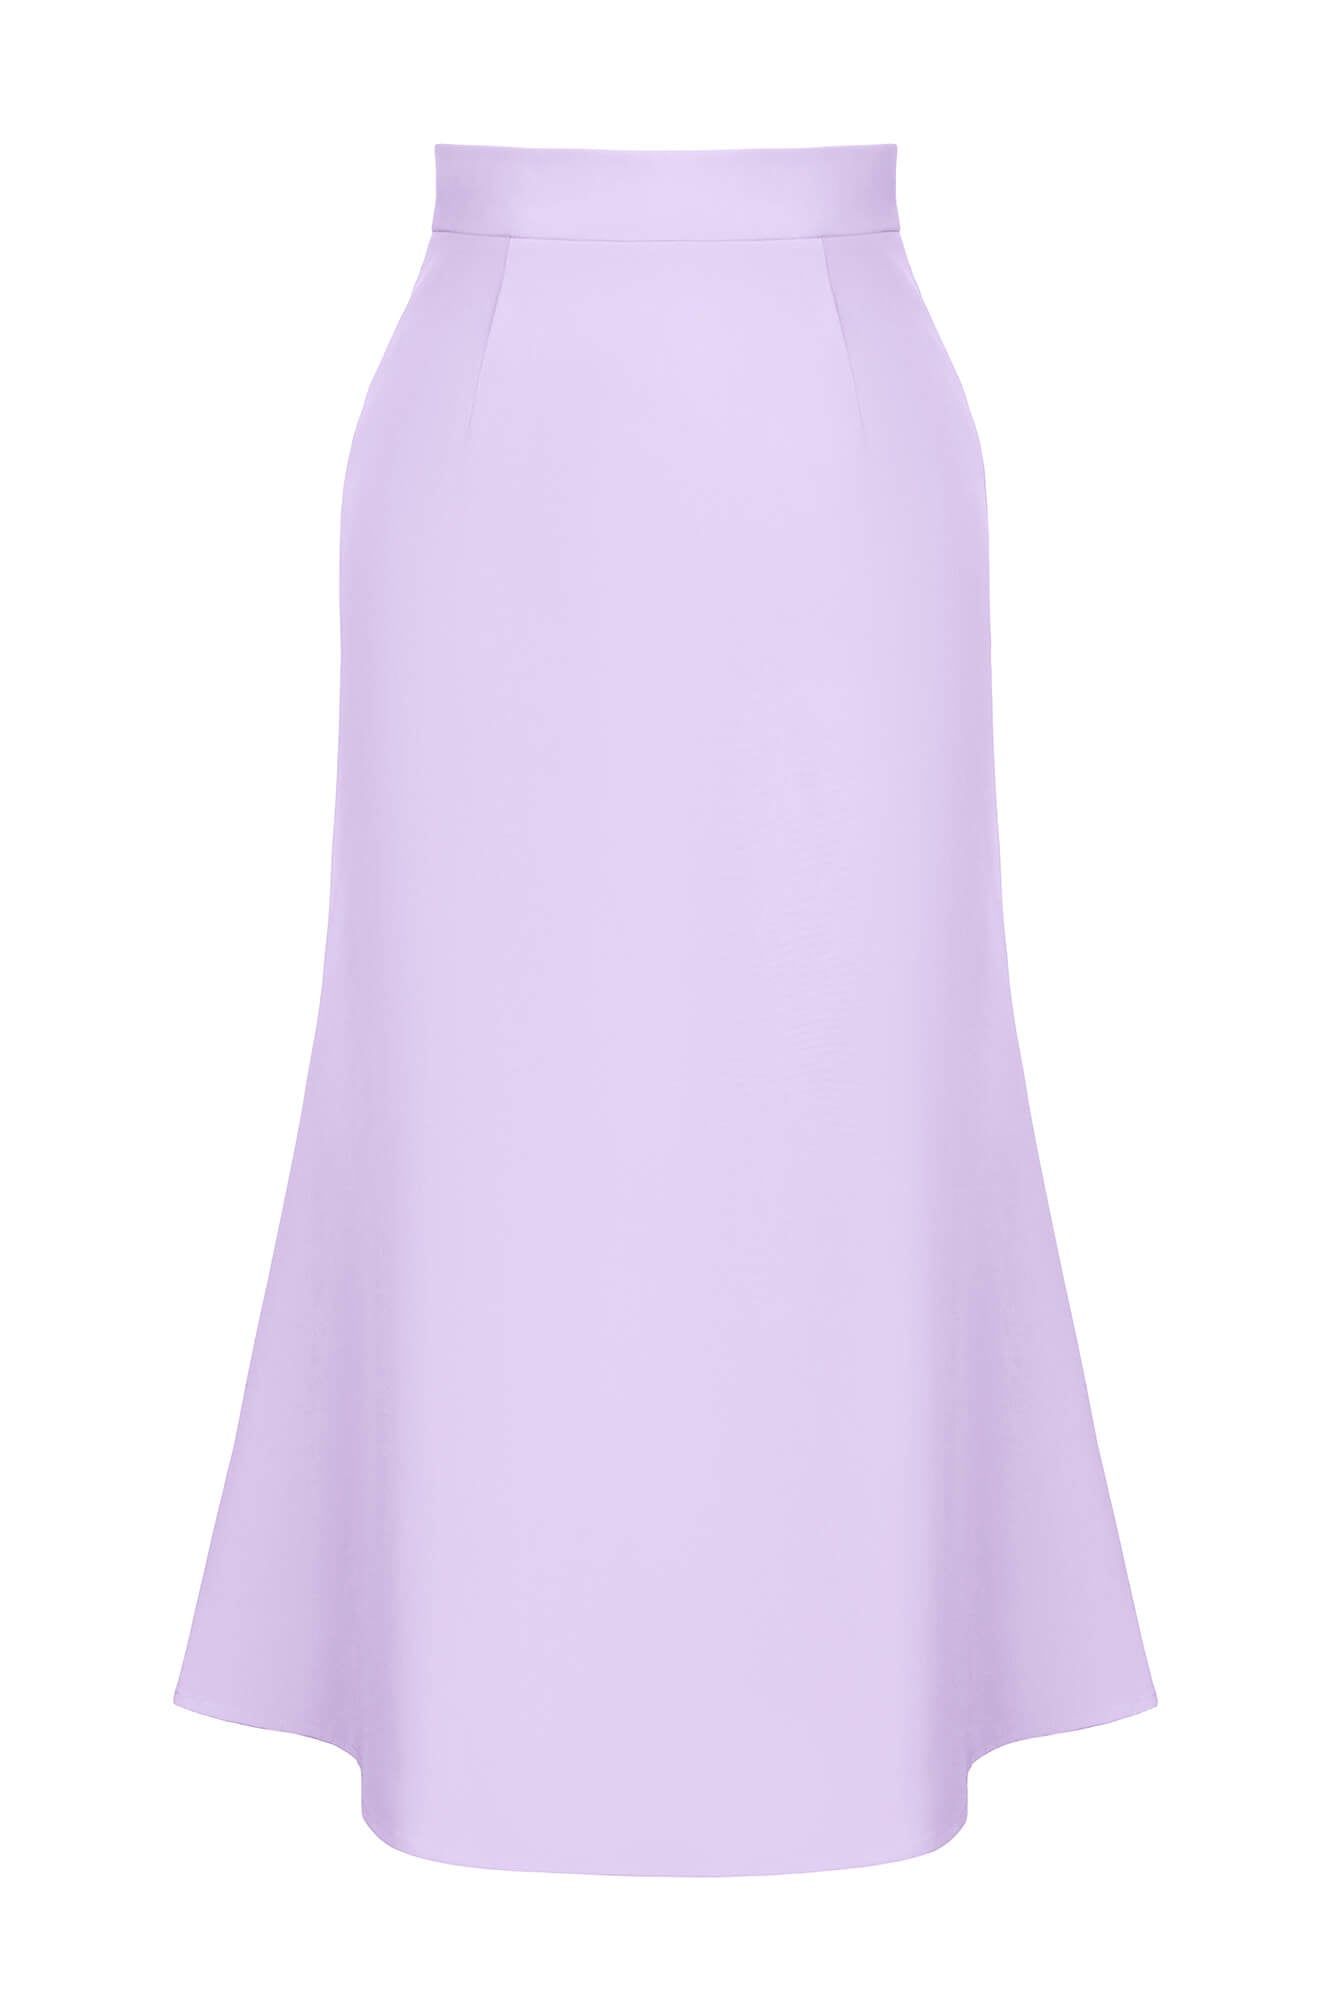 Viscose Midi Skirt in Lavender